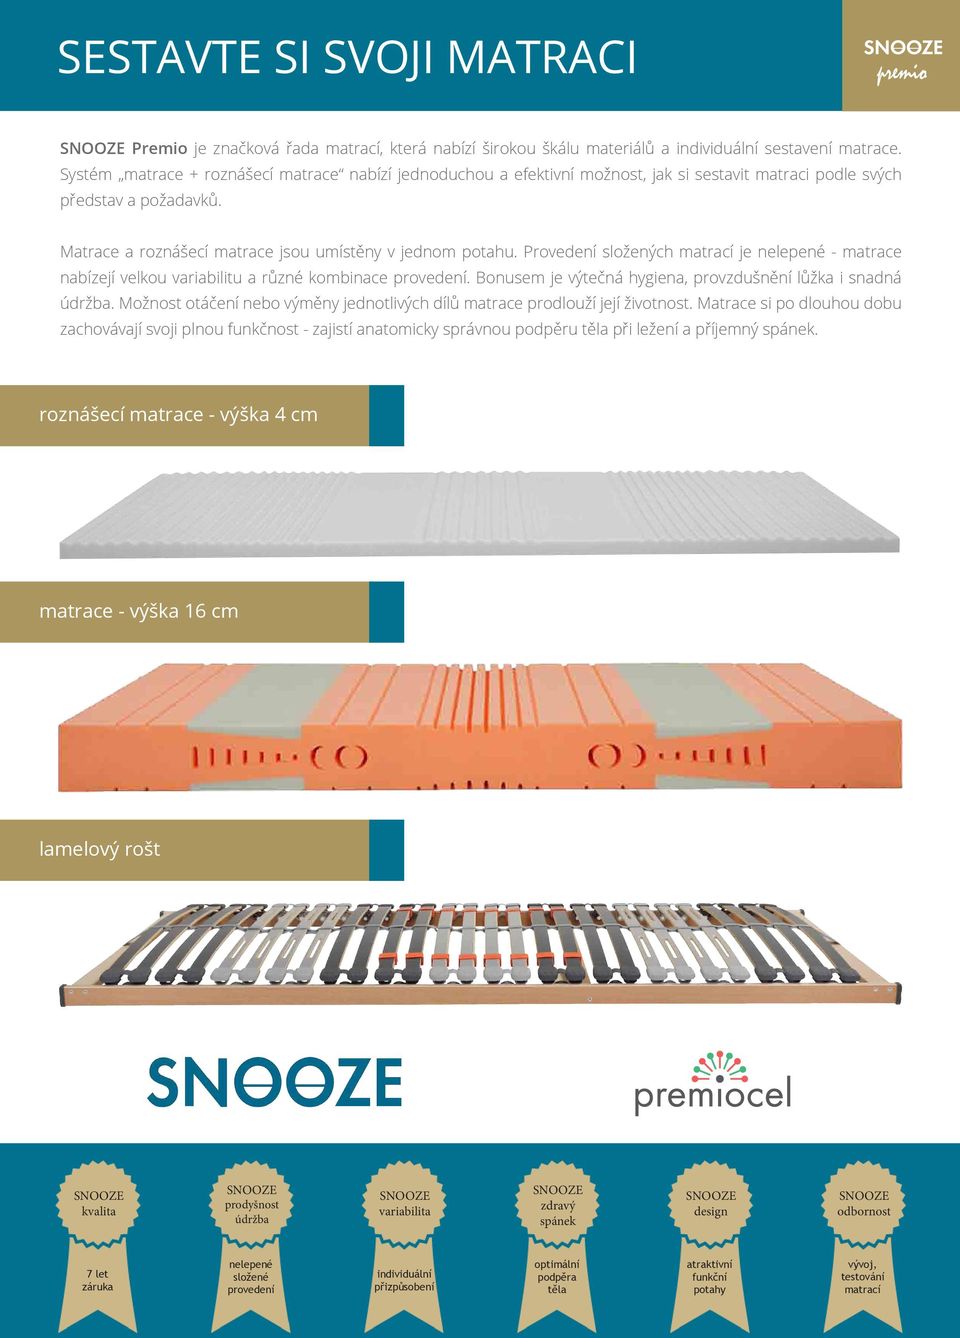 Provedení složených matrací je nelepené - matrace nabízejí velkou variabilitu a různé kombinace provedení. Bonusem je výtečná hygiena, provzdušnění lůžka i snadná údržba.